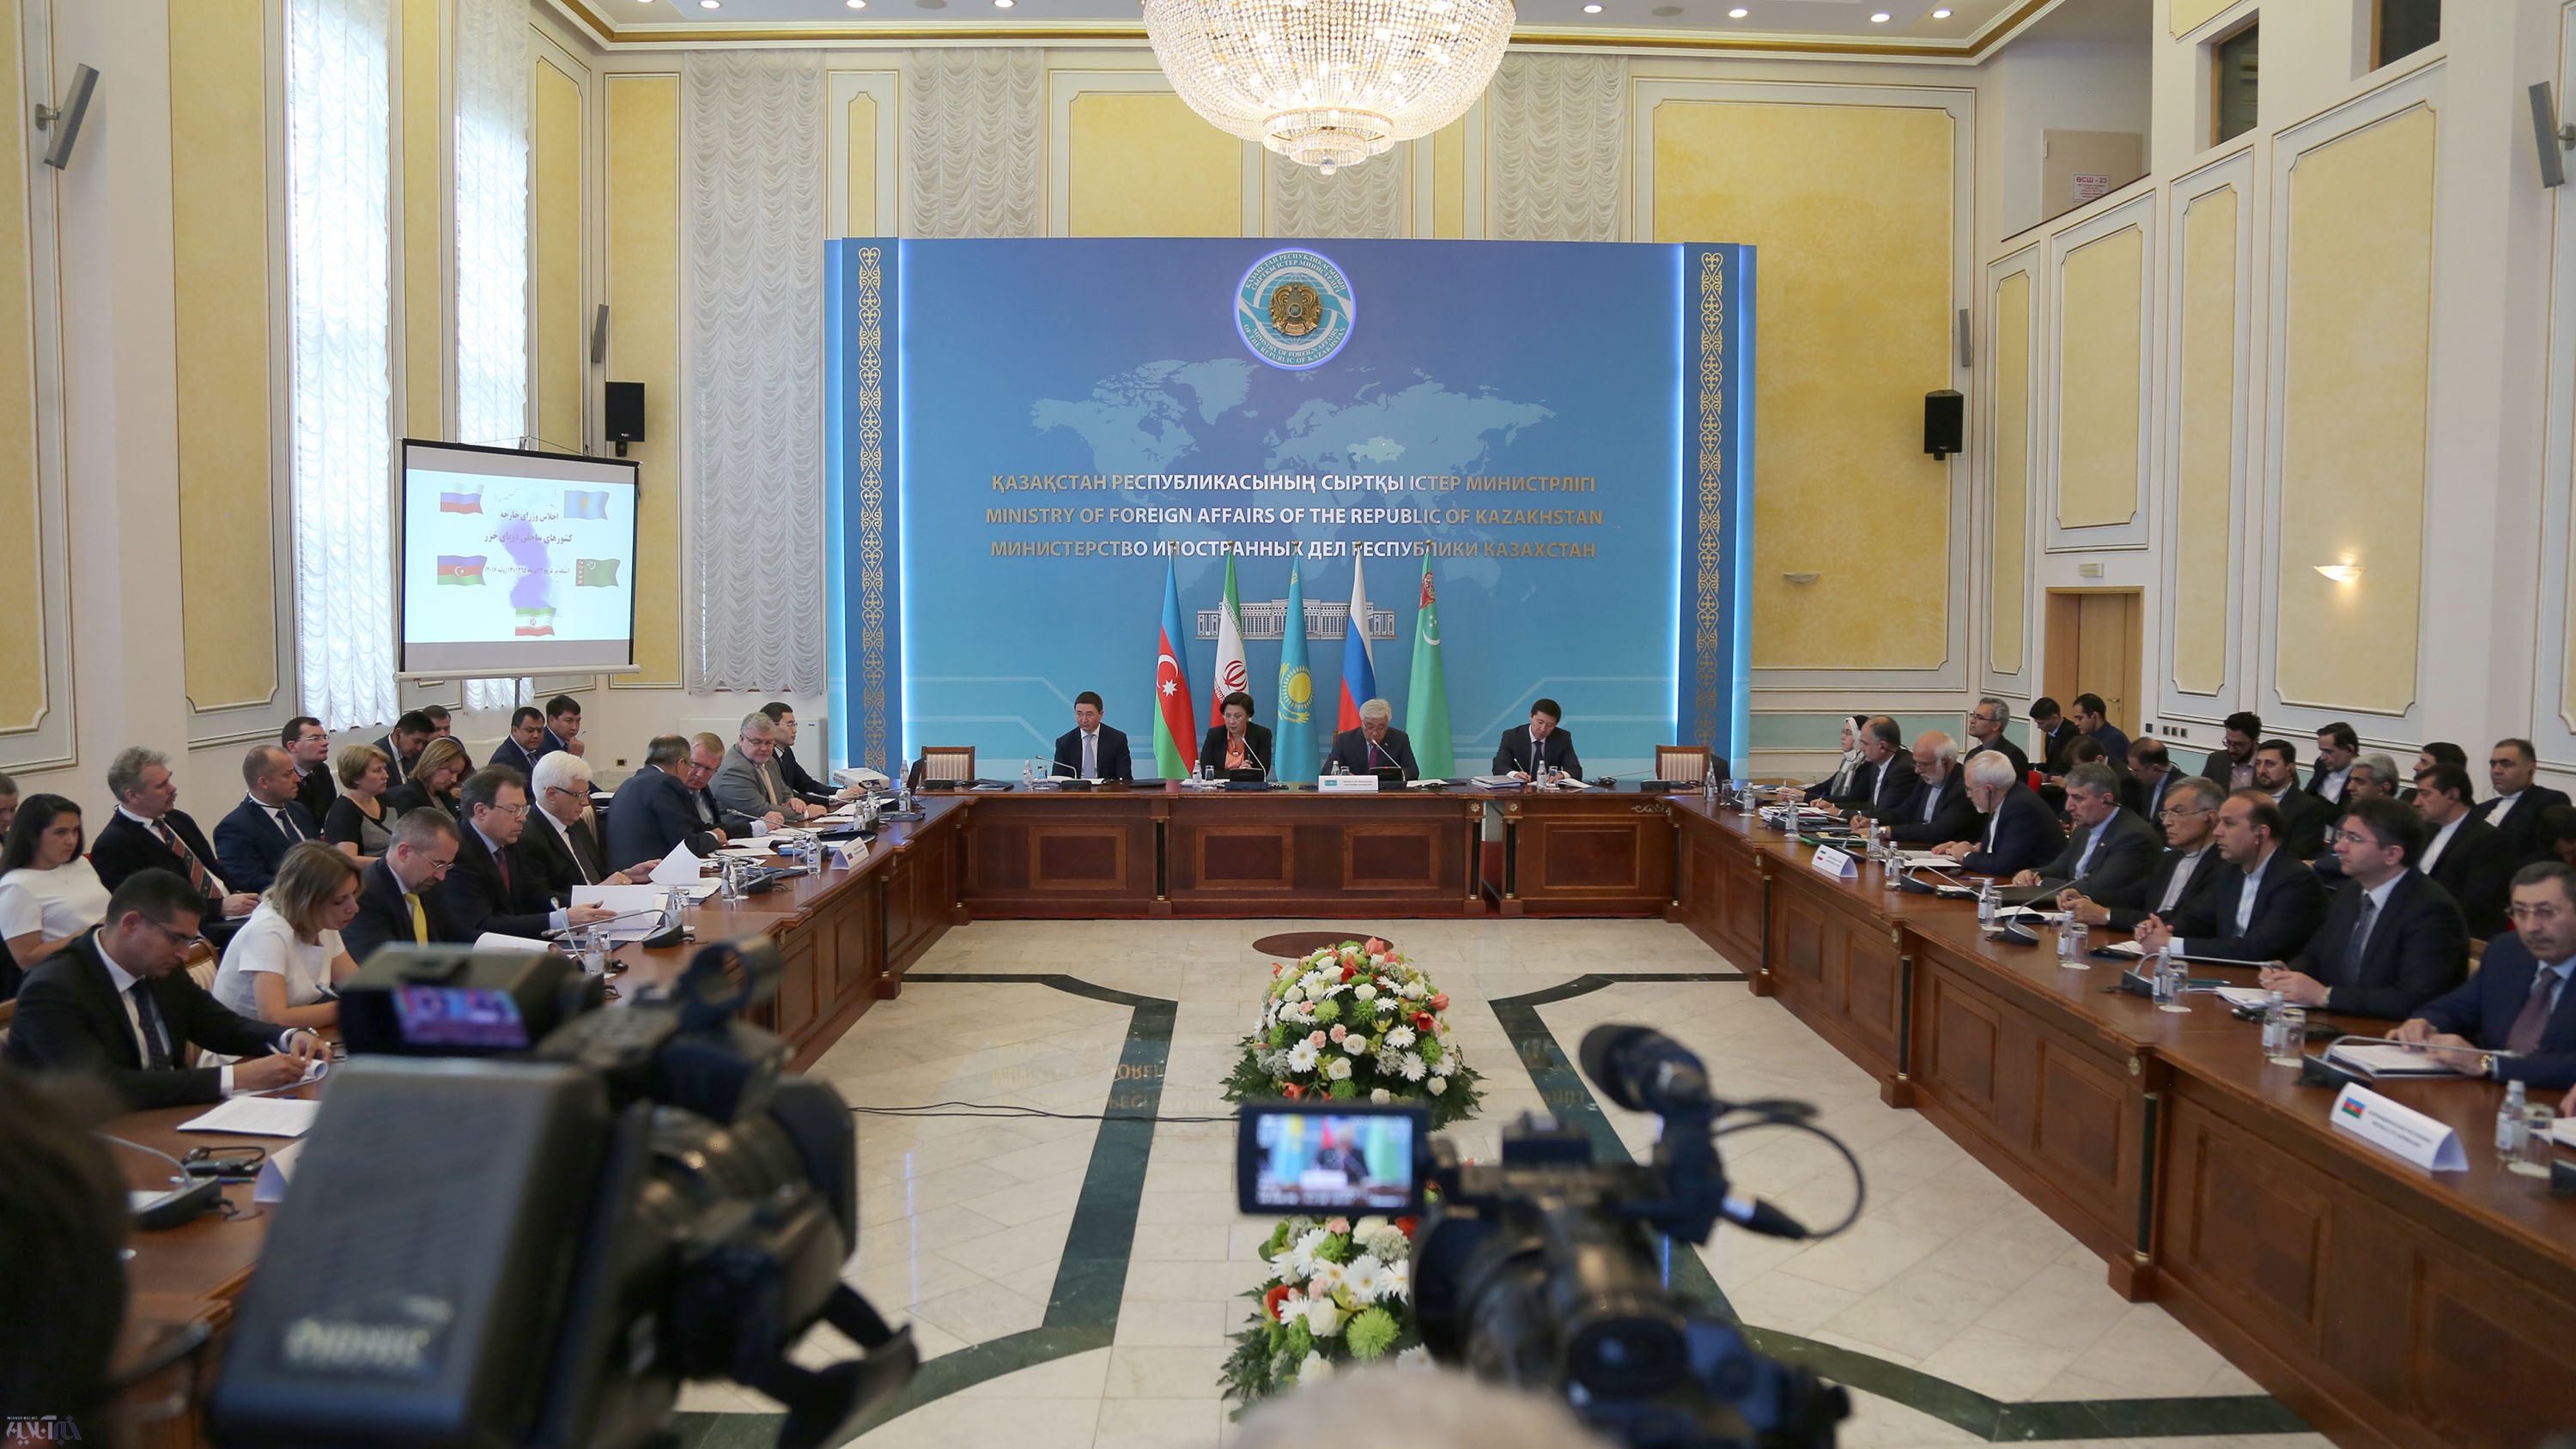 وزیر خارجه قزاقستان: خیلی به اتمام رژیم حقوقی خزر نزدیک هستیم/ سپتامبر در تهران نشست خواهیم داشت